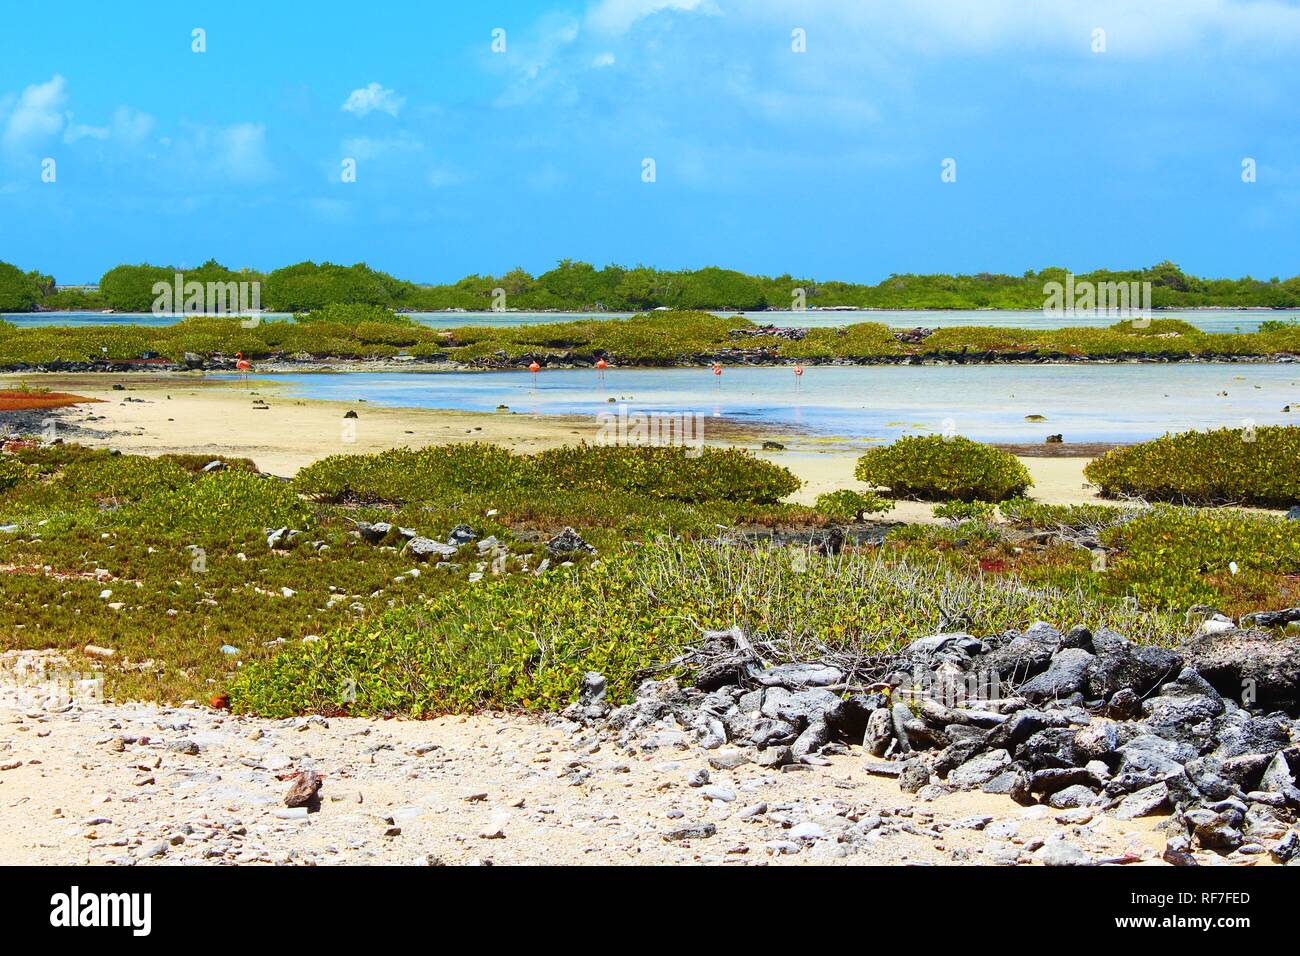 Un grupo de flamencos de pie en un poco de agua rodeado por la naturaleza, el paisaje agreste de la isla caribeña de Bonaire. Foto de stock